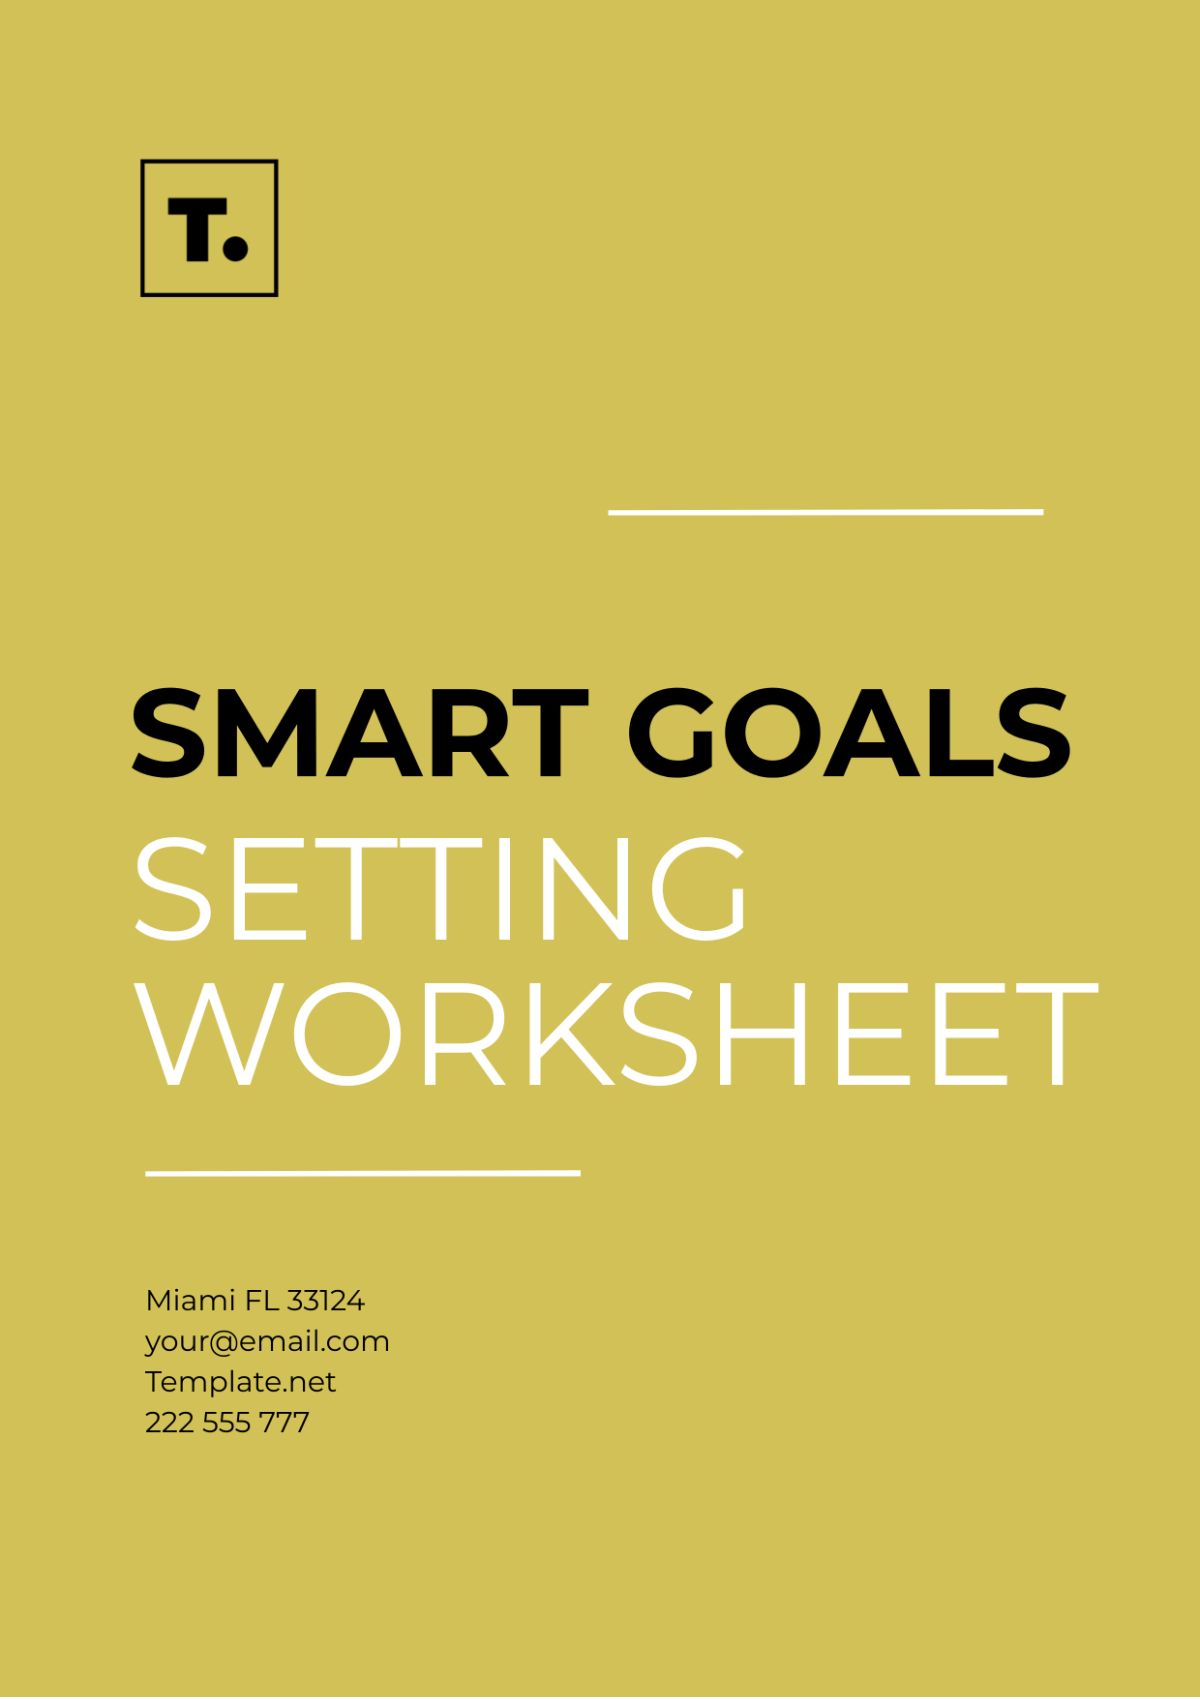 SMART Goals Setting Worksheet Template